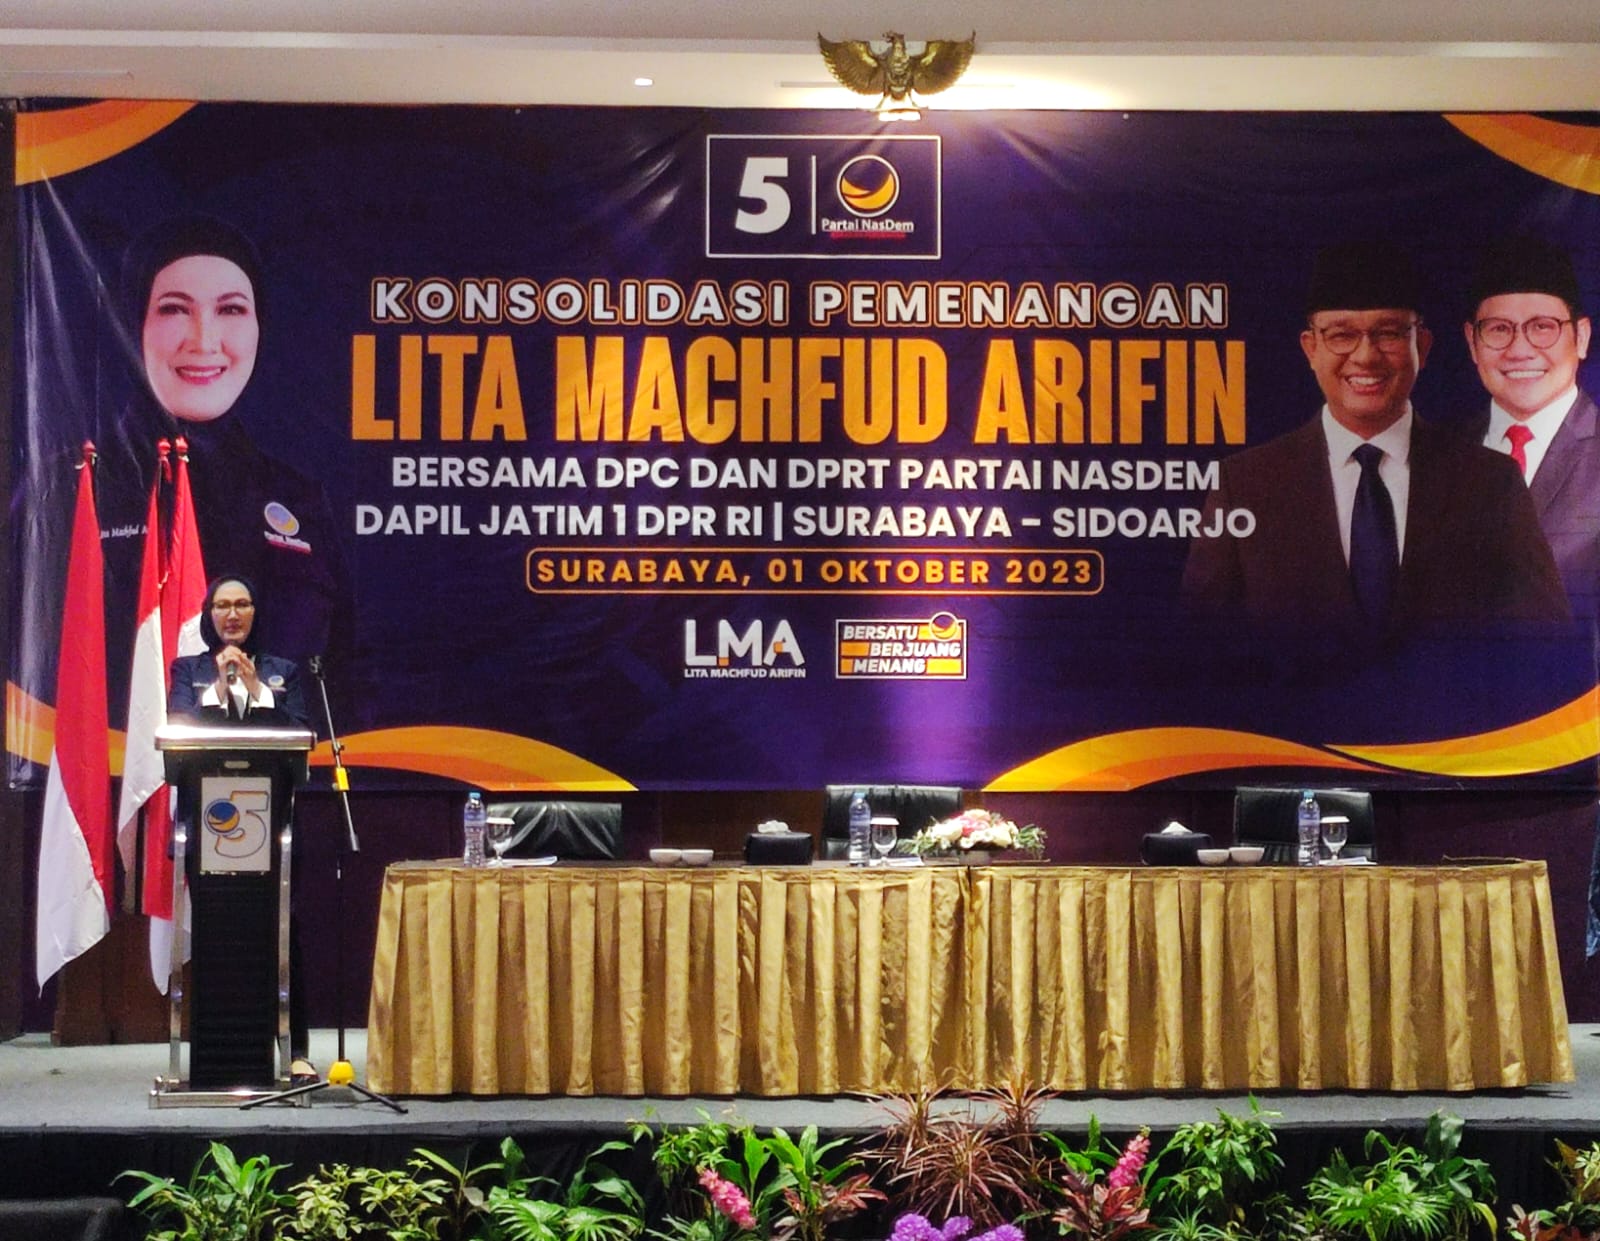 17 DPC NasDem di Surabaya Beri Dukungan ke Lita Machfud Arifin